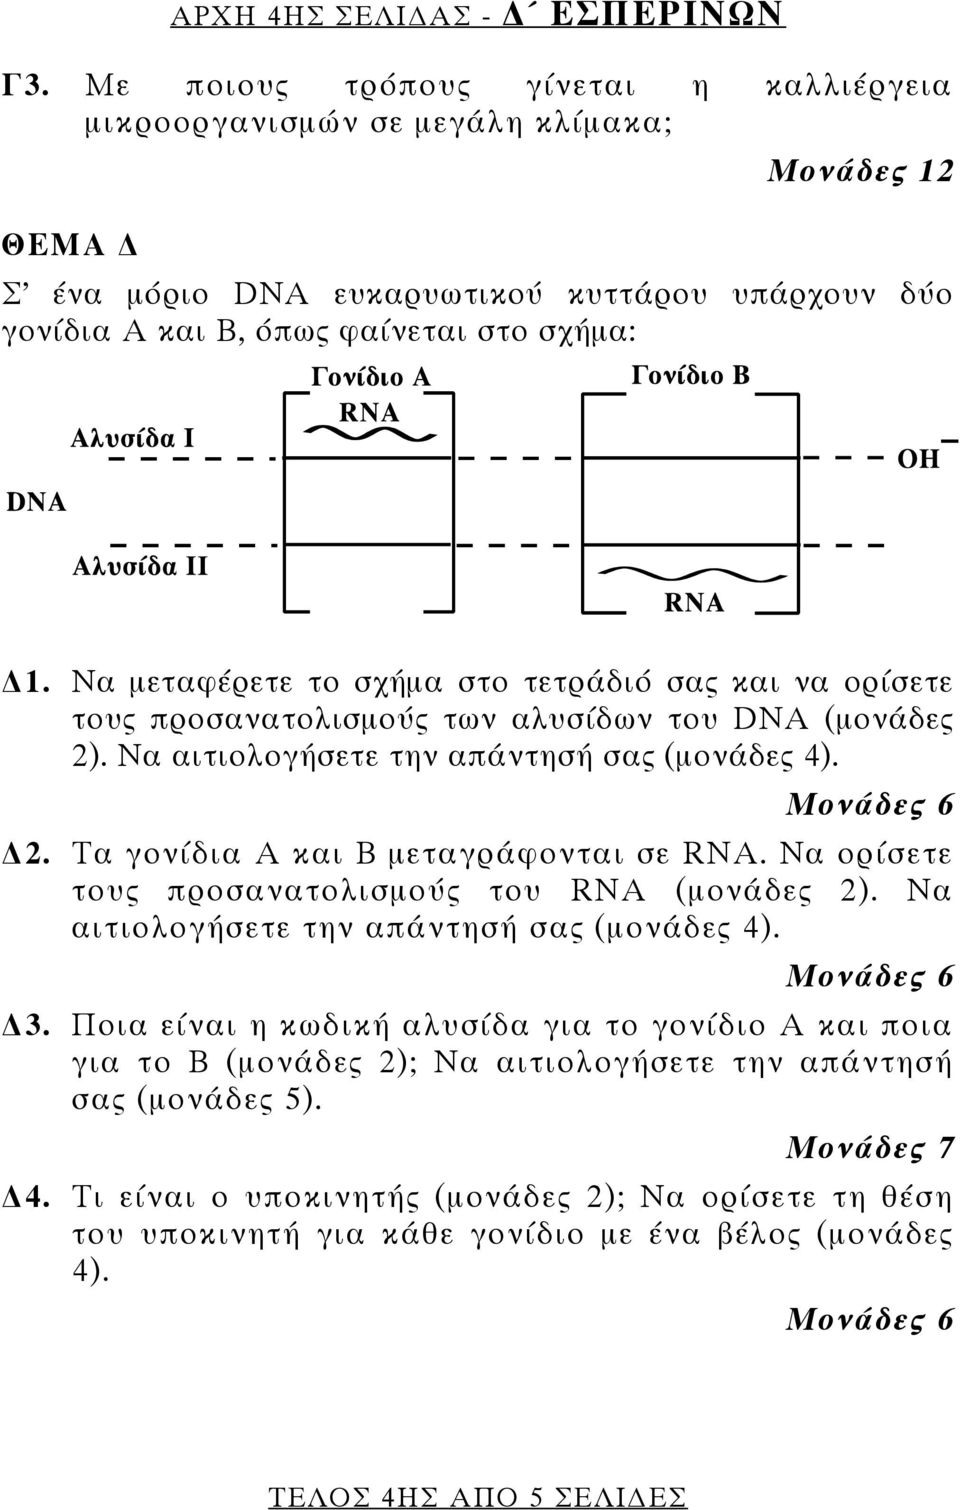 Να μεταφέρετε το σχήμα στο τετράδιό σας και να ορίσετε τους προσανατολισμούς των αλυσίδων του DNA (μονάδες 2). Να αιτιολογήσετε την απάντησή σας (μονάδες 4). Μονάδες 6 2.